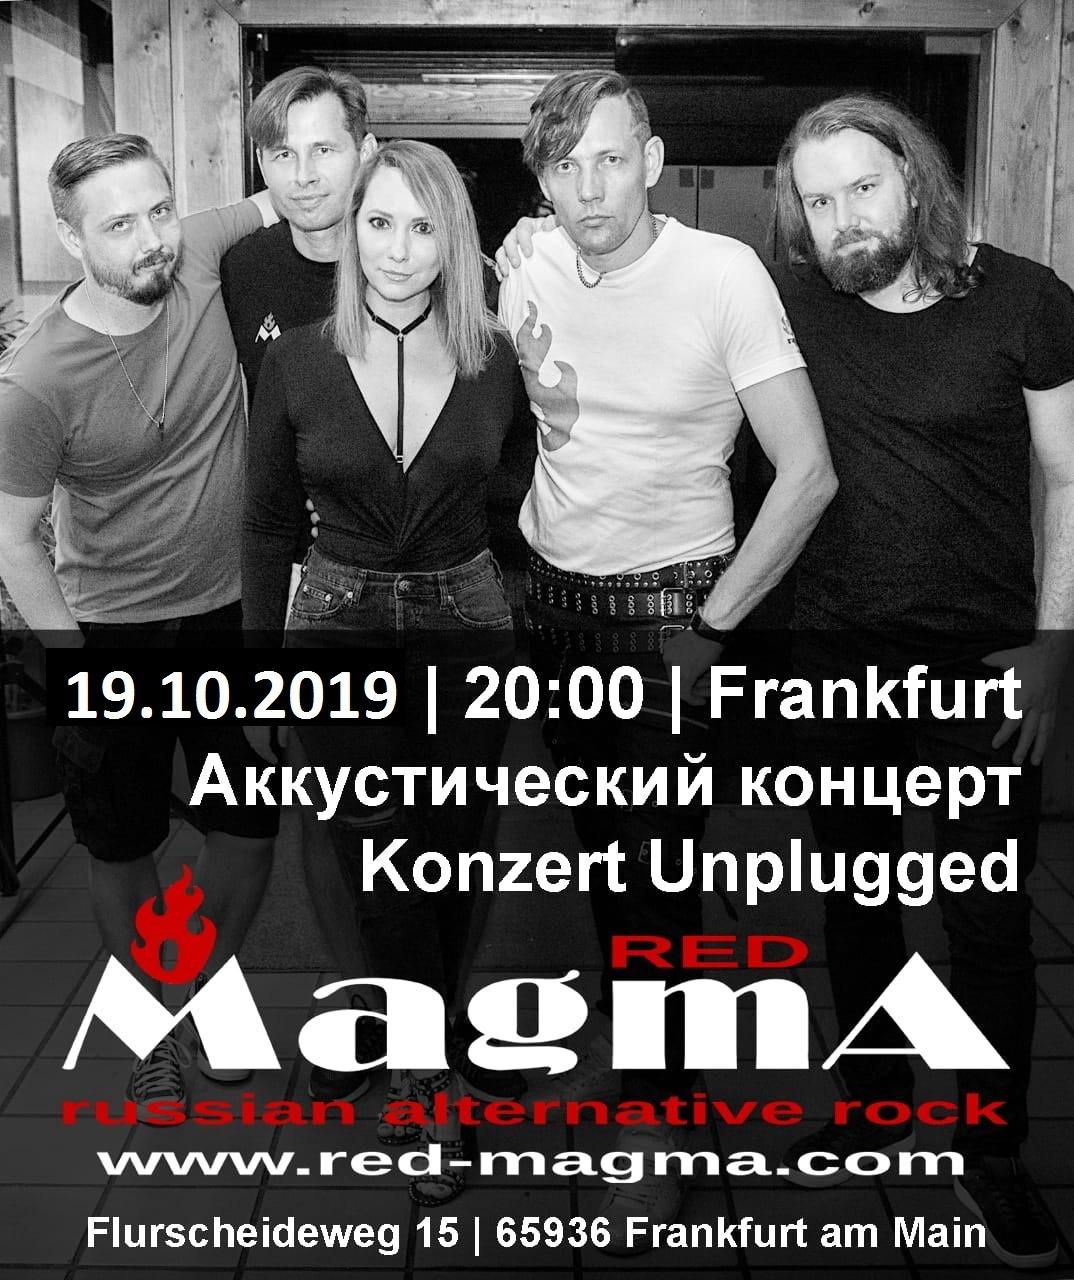 Affiche. Possev. Группа Red Magma - Русский альтернативный рок из Германии. 2019-10-20